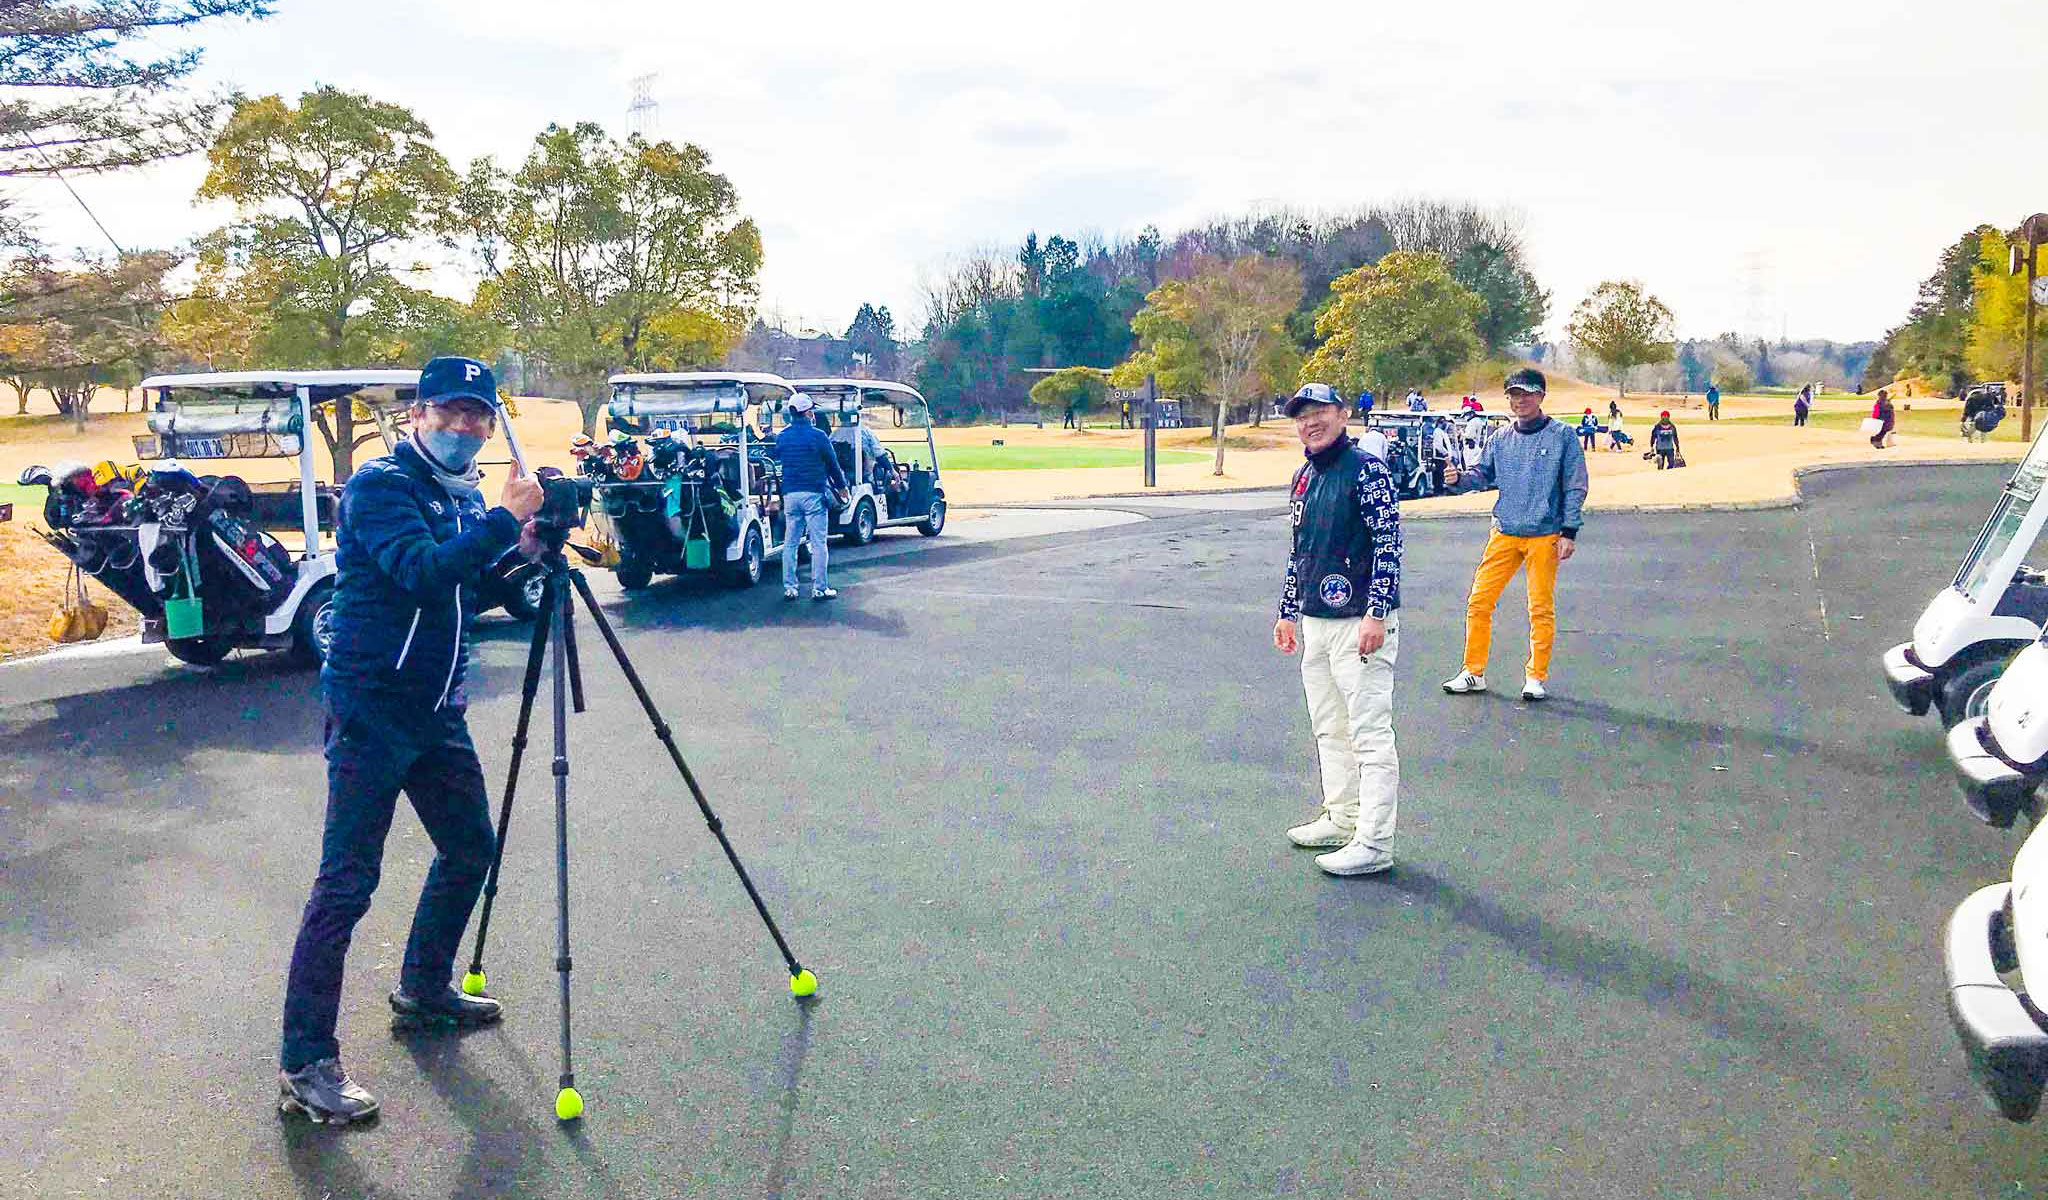 ベアズパウジャパンで記念写真する、関西ゴルフサークル セブンエイトの湯浅浩由さんと村上修司さん